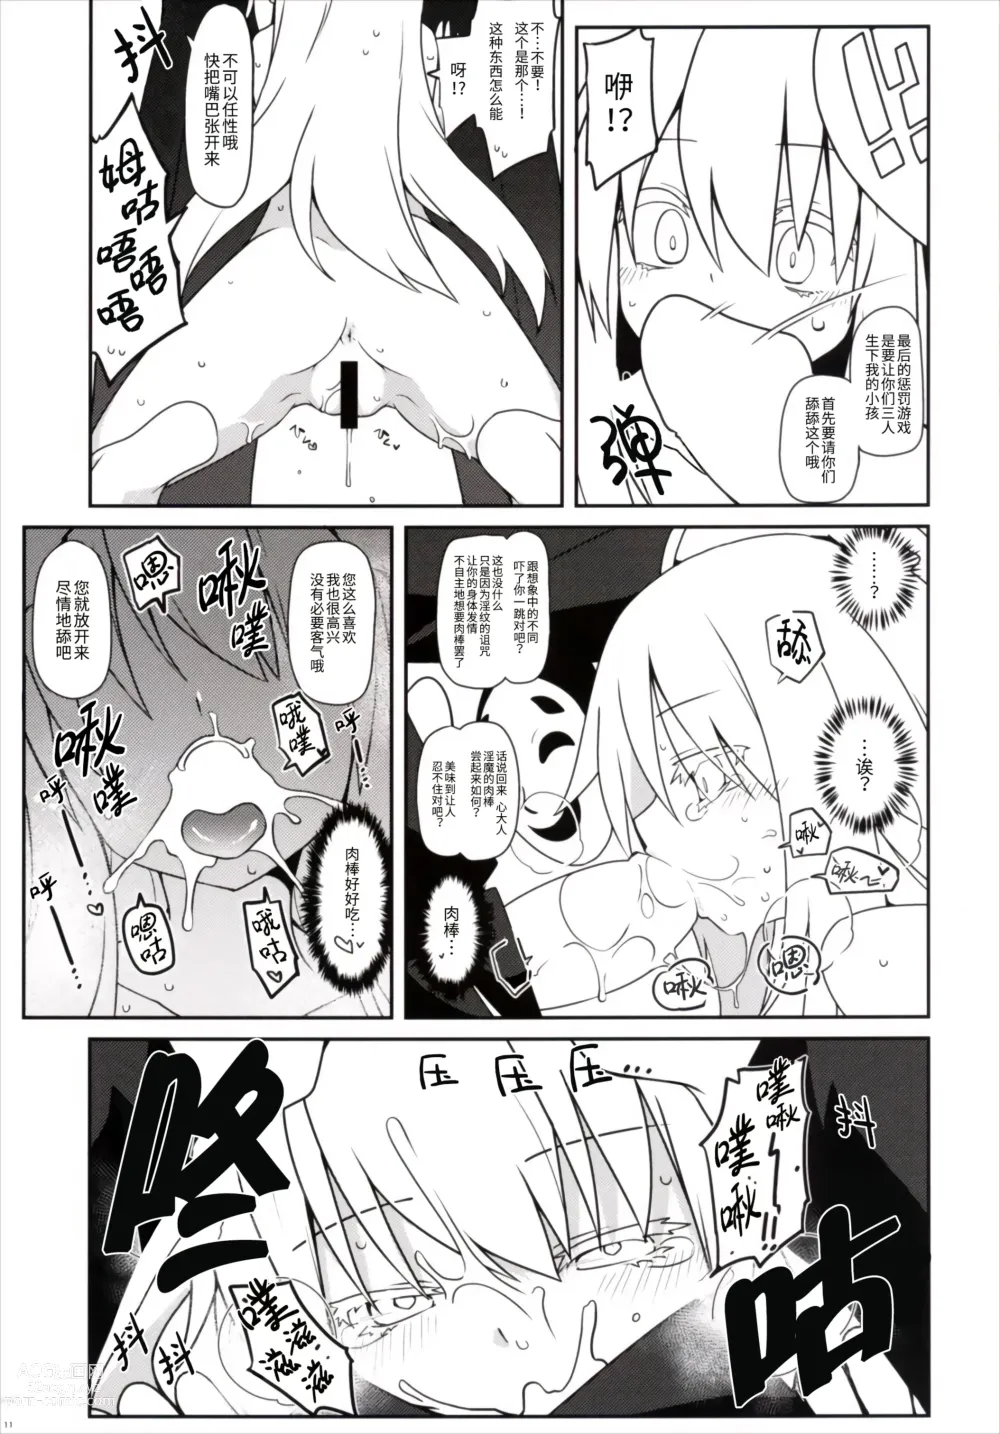 Page 12 of doujinshi 光溜溜扭扭乐 恋&心 with 芙兰朵露